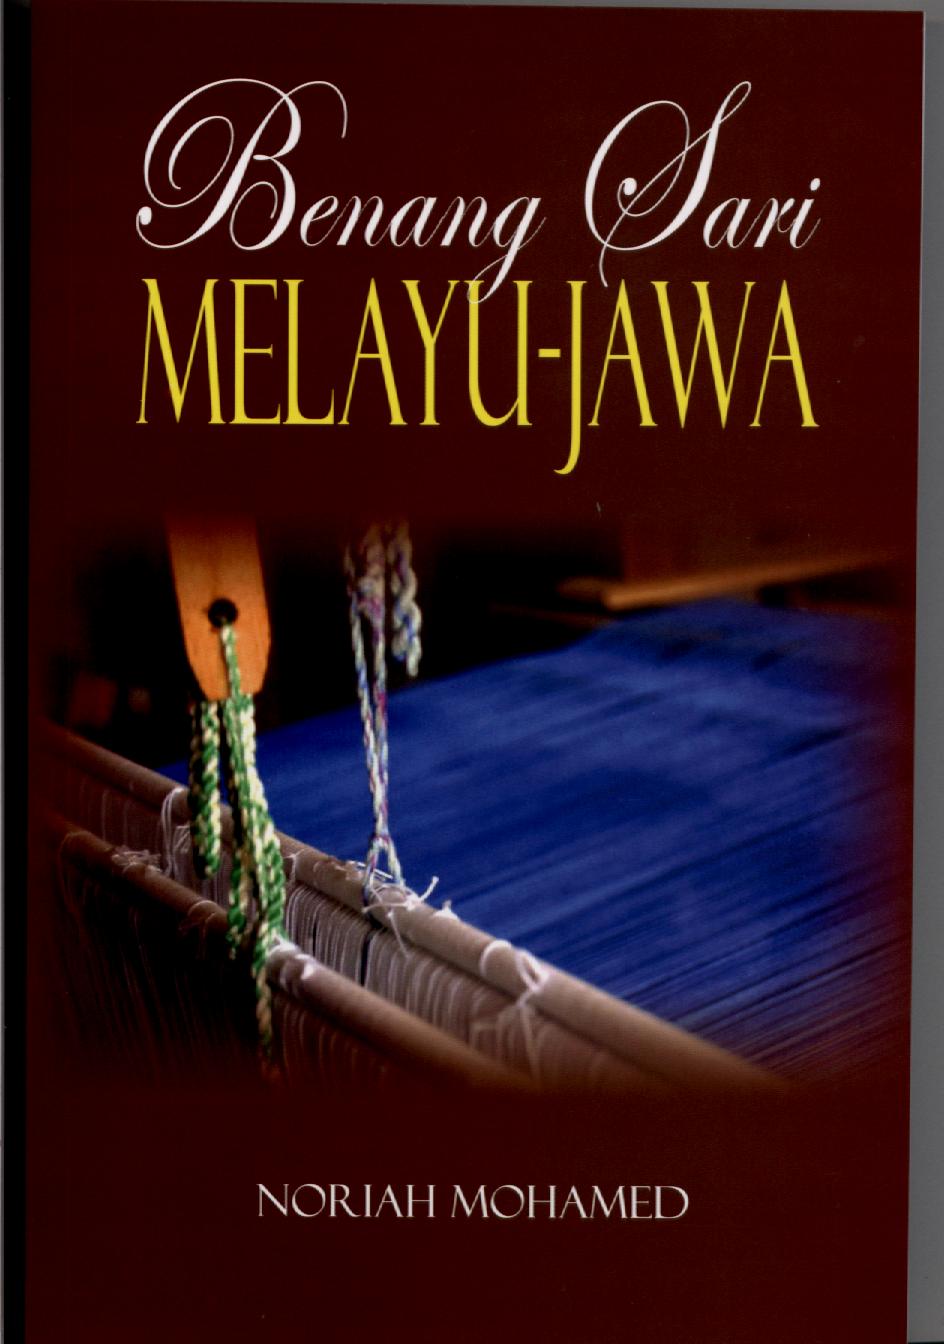 Benang Sari Melayu-Jawa